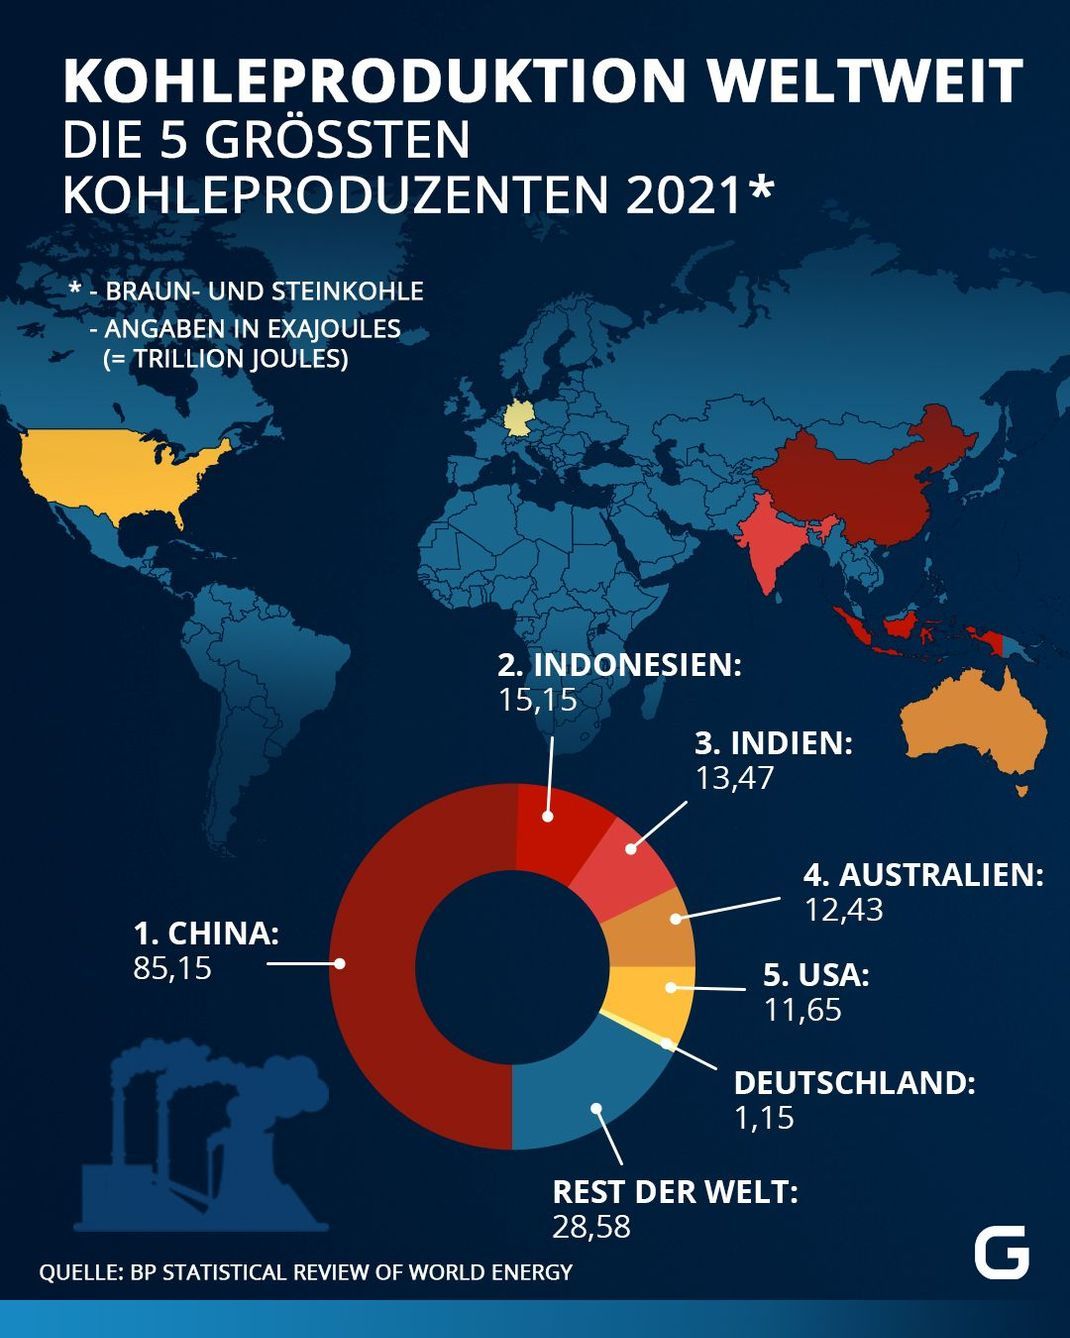 China macht mehr als die Hälfte der weltweiten Kohleproduktion aus und ist damit der mit Abstand größte Kohleproduzent 2021. Dahinter folgen Indonesien, Indien, Australien und USA.